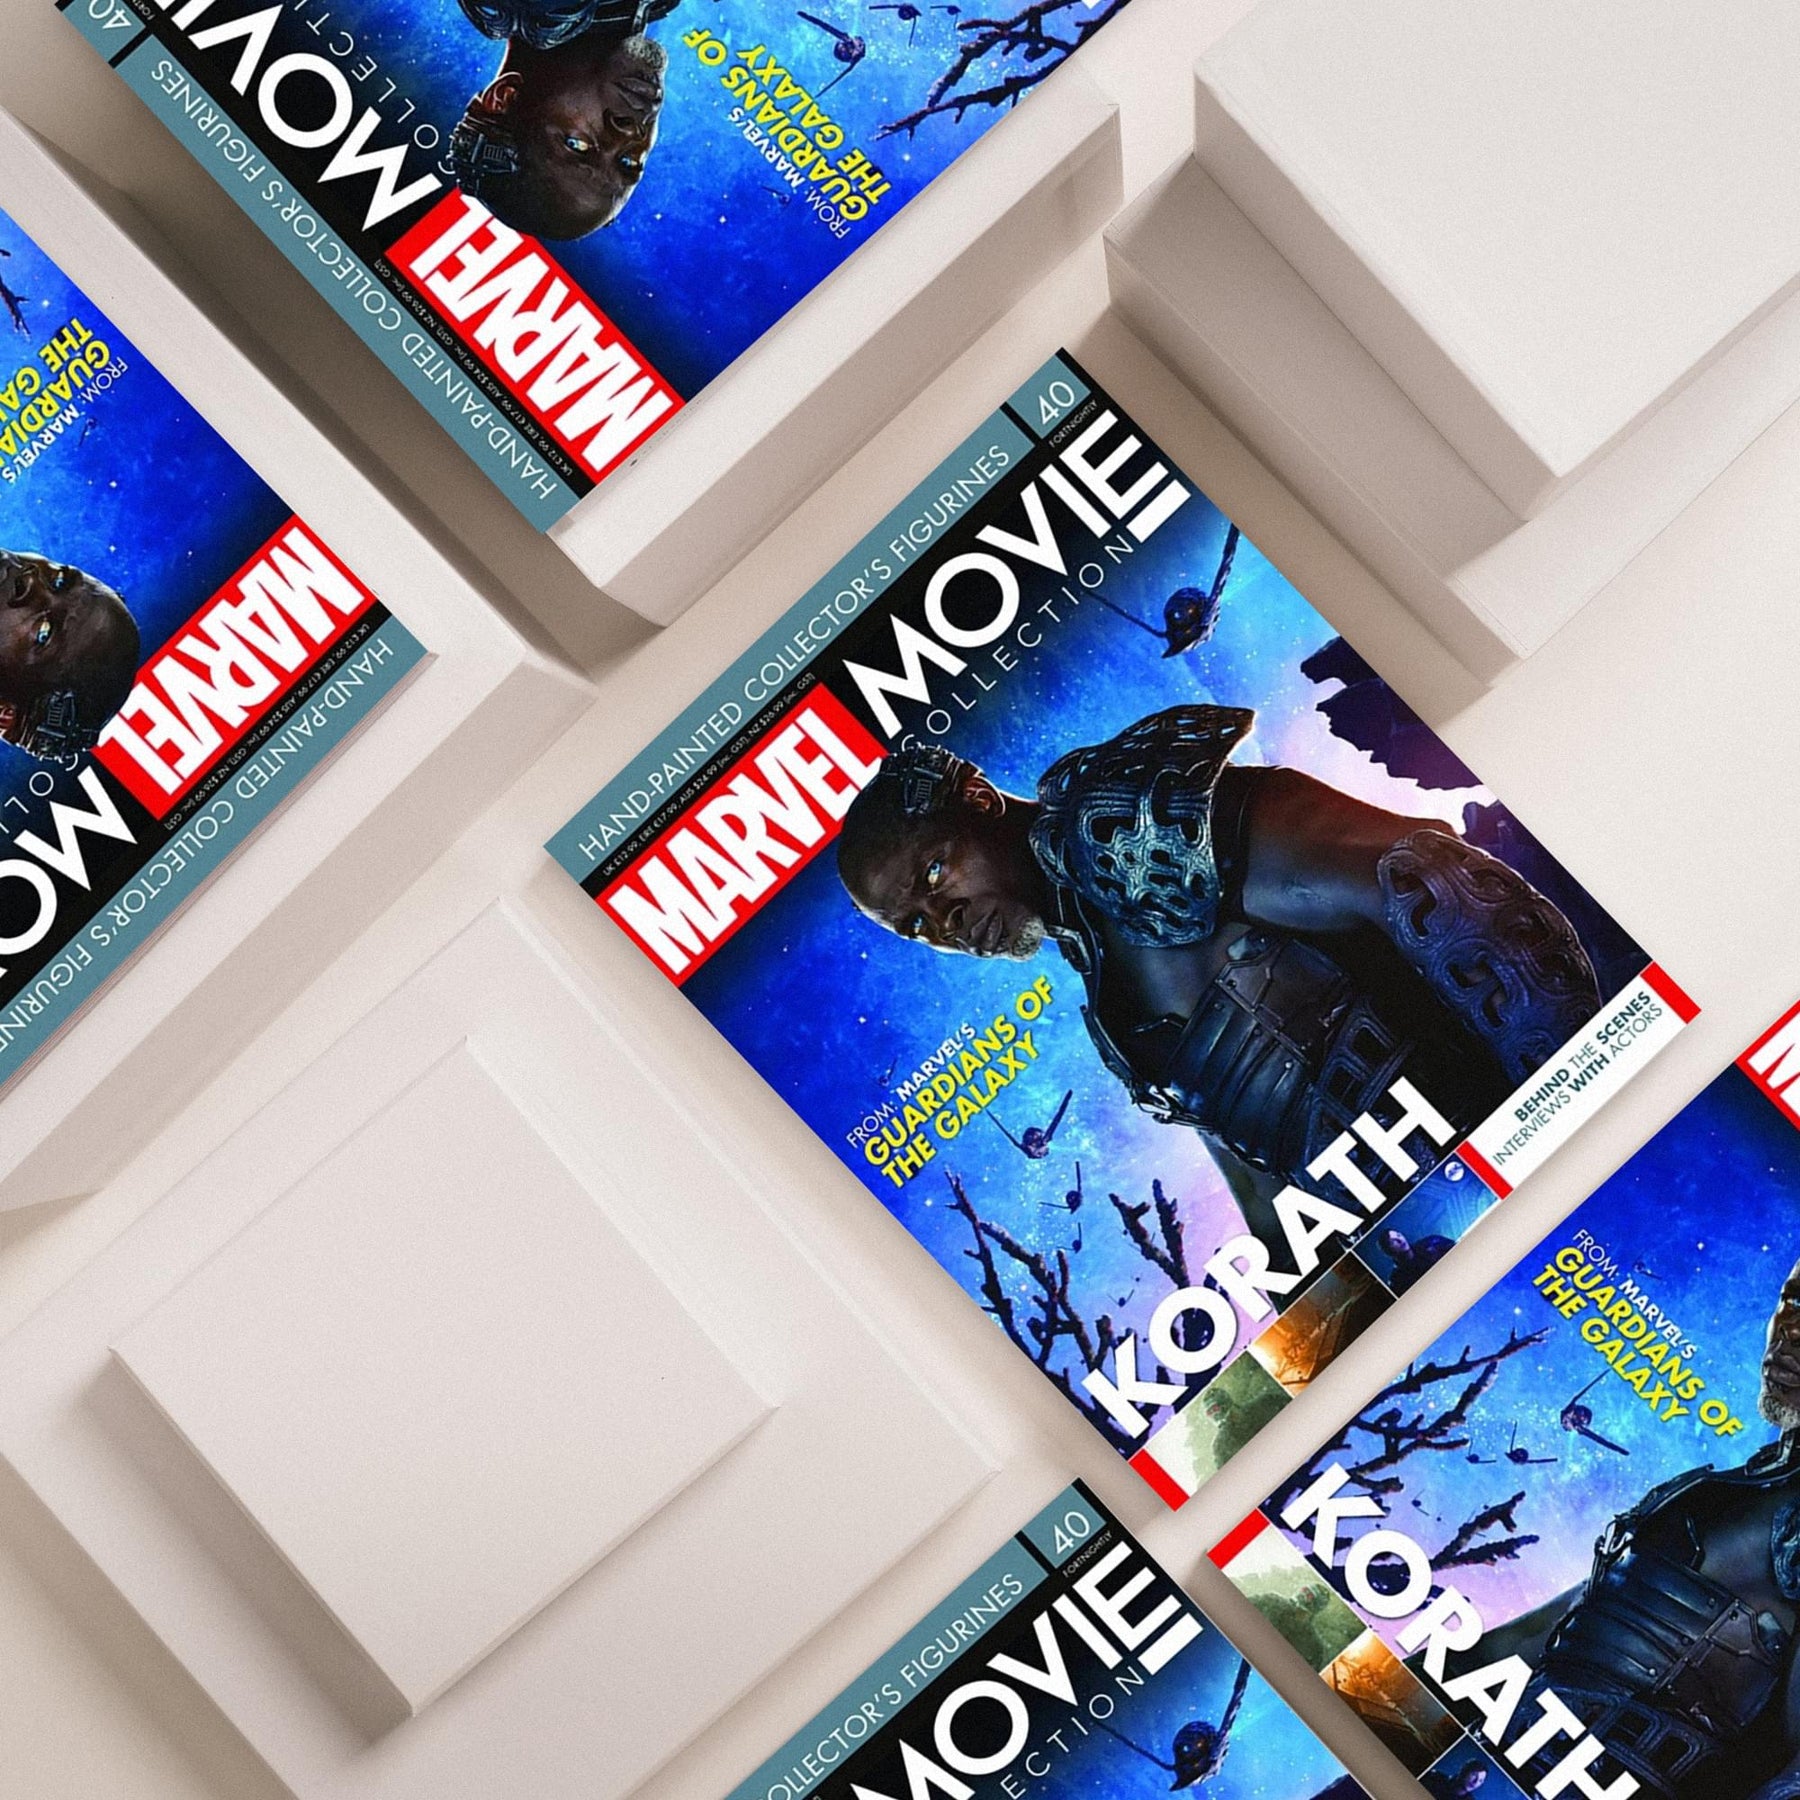 Marvel Movie Collection Magazine Issue #40 Korath